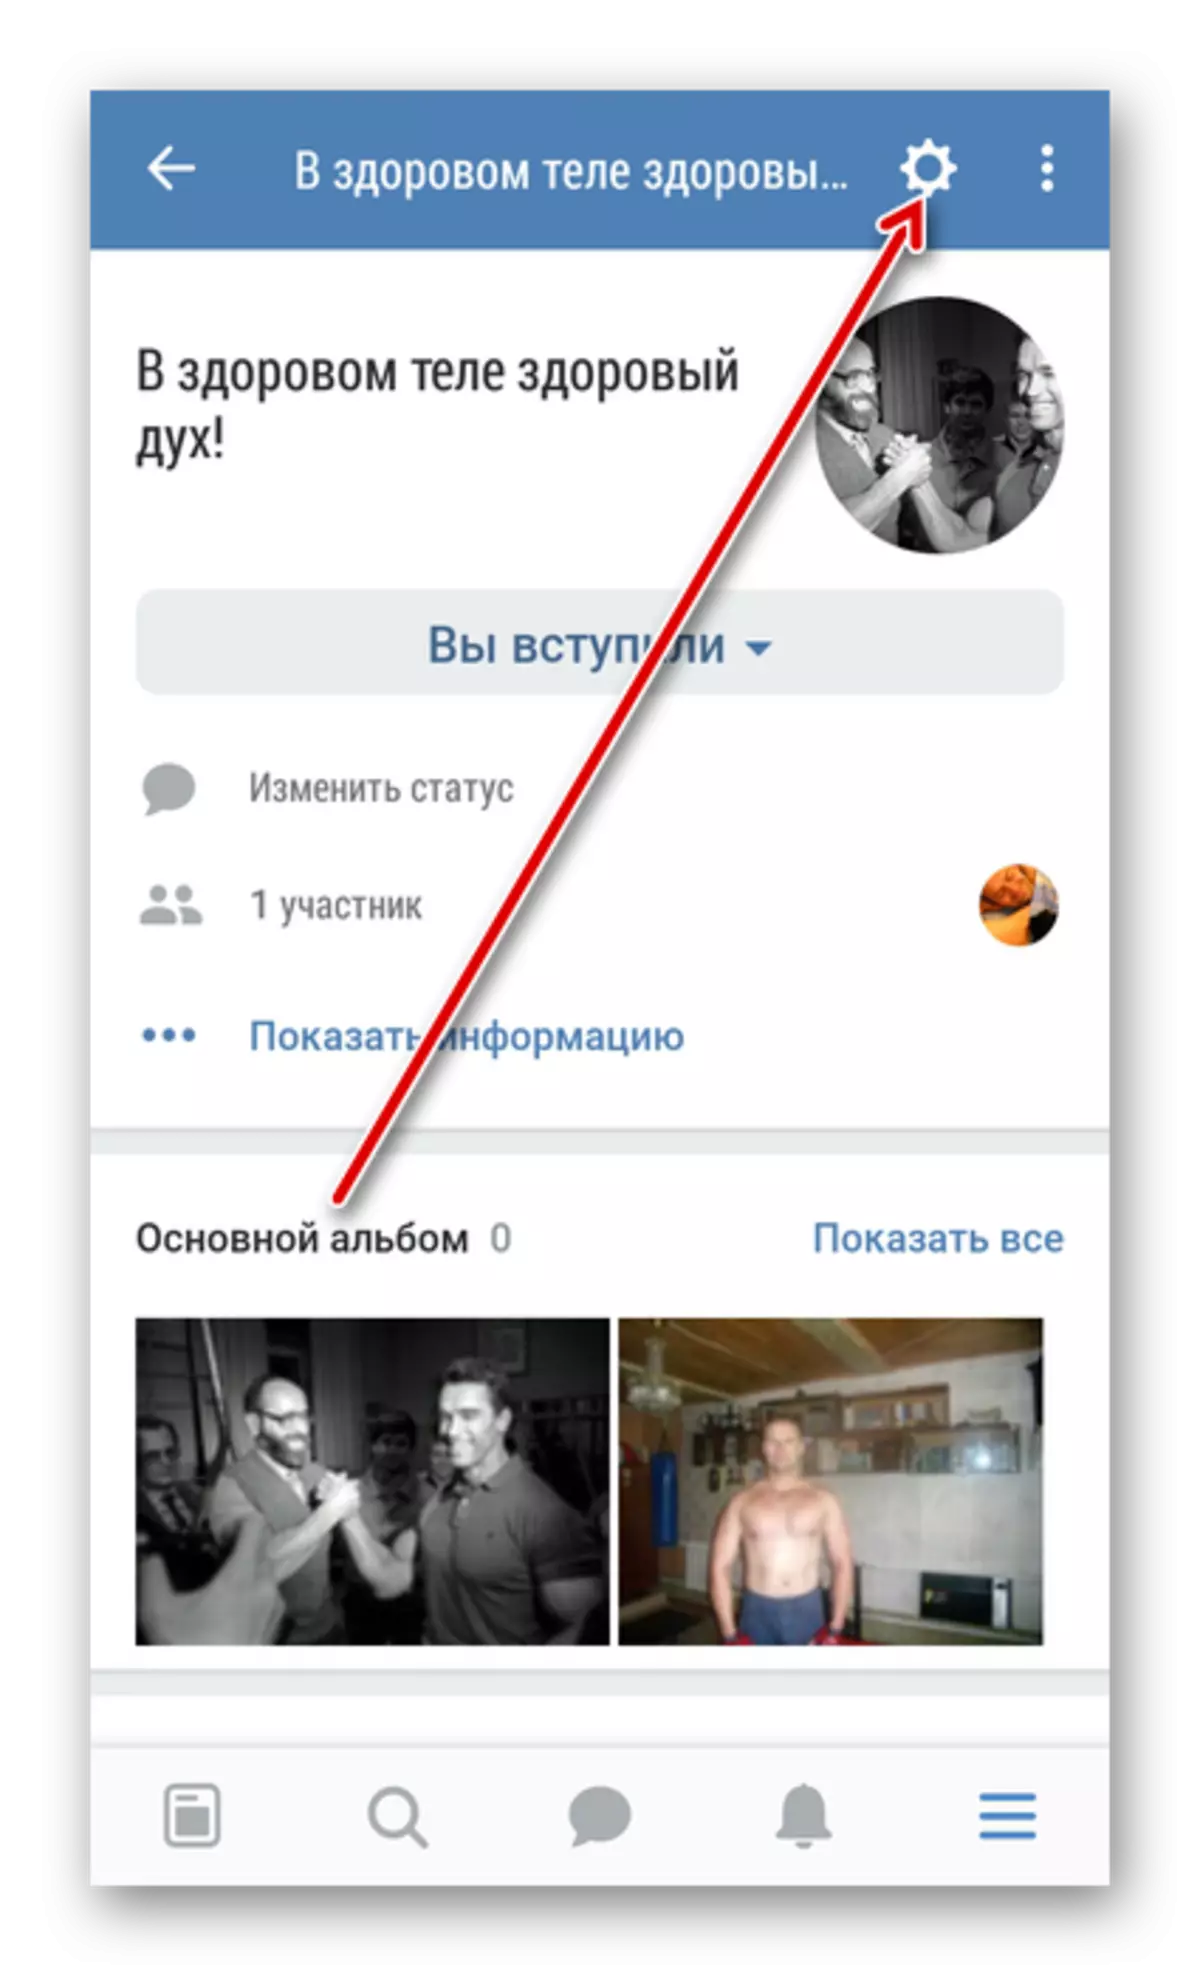 ចូលទៅការកំណត់ក្រុមរបស់អ្នកនៅ Vkontakte